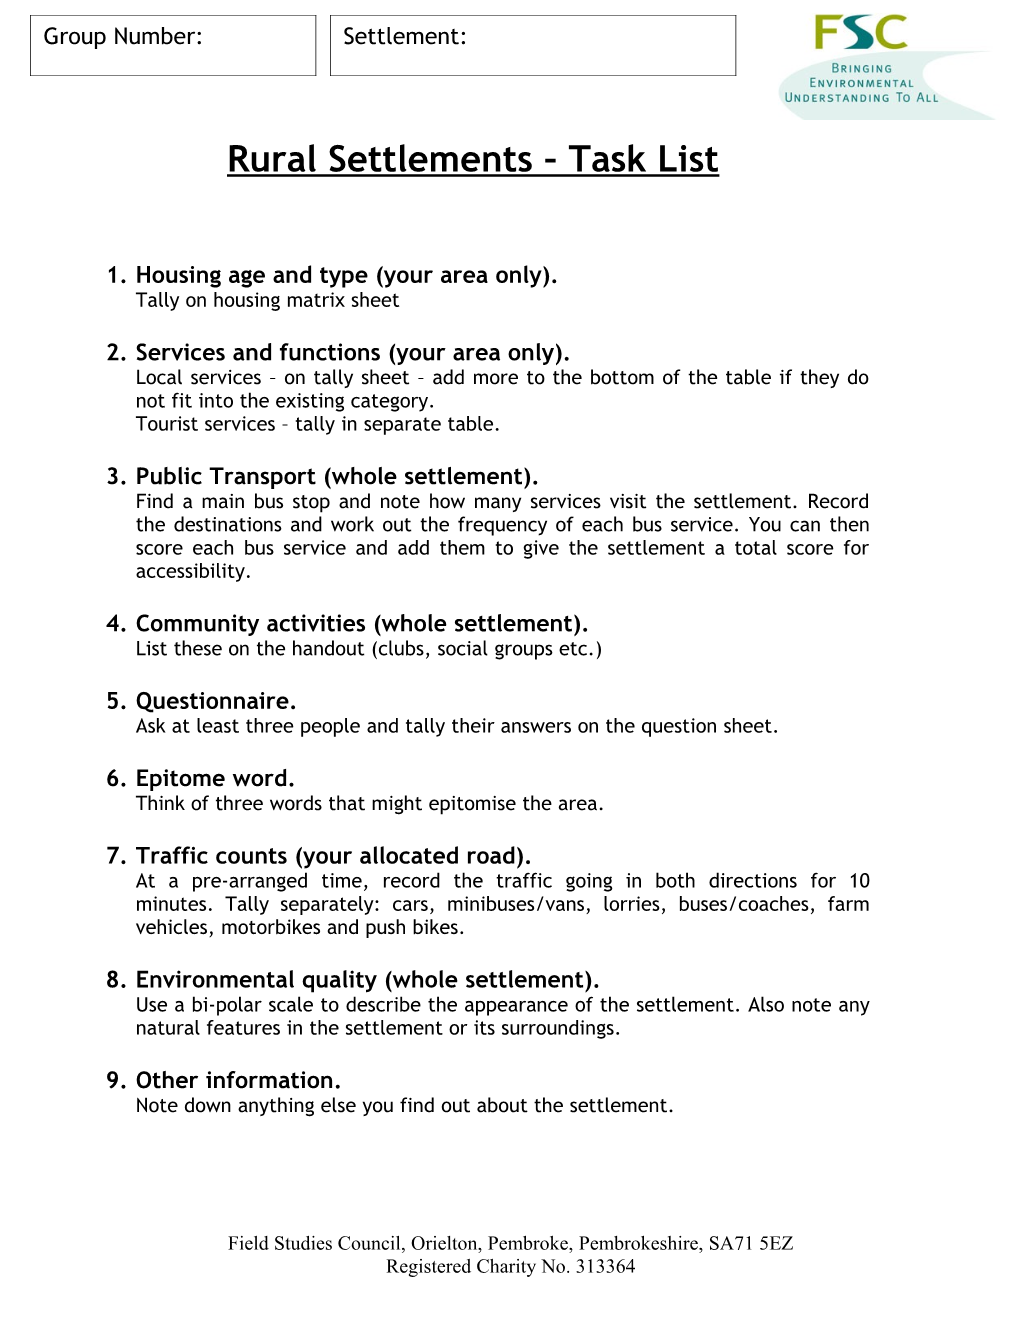 Rural Settlements Task List